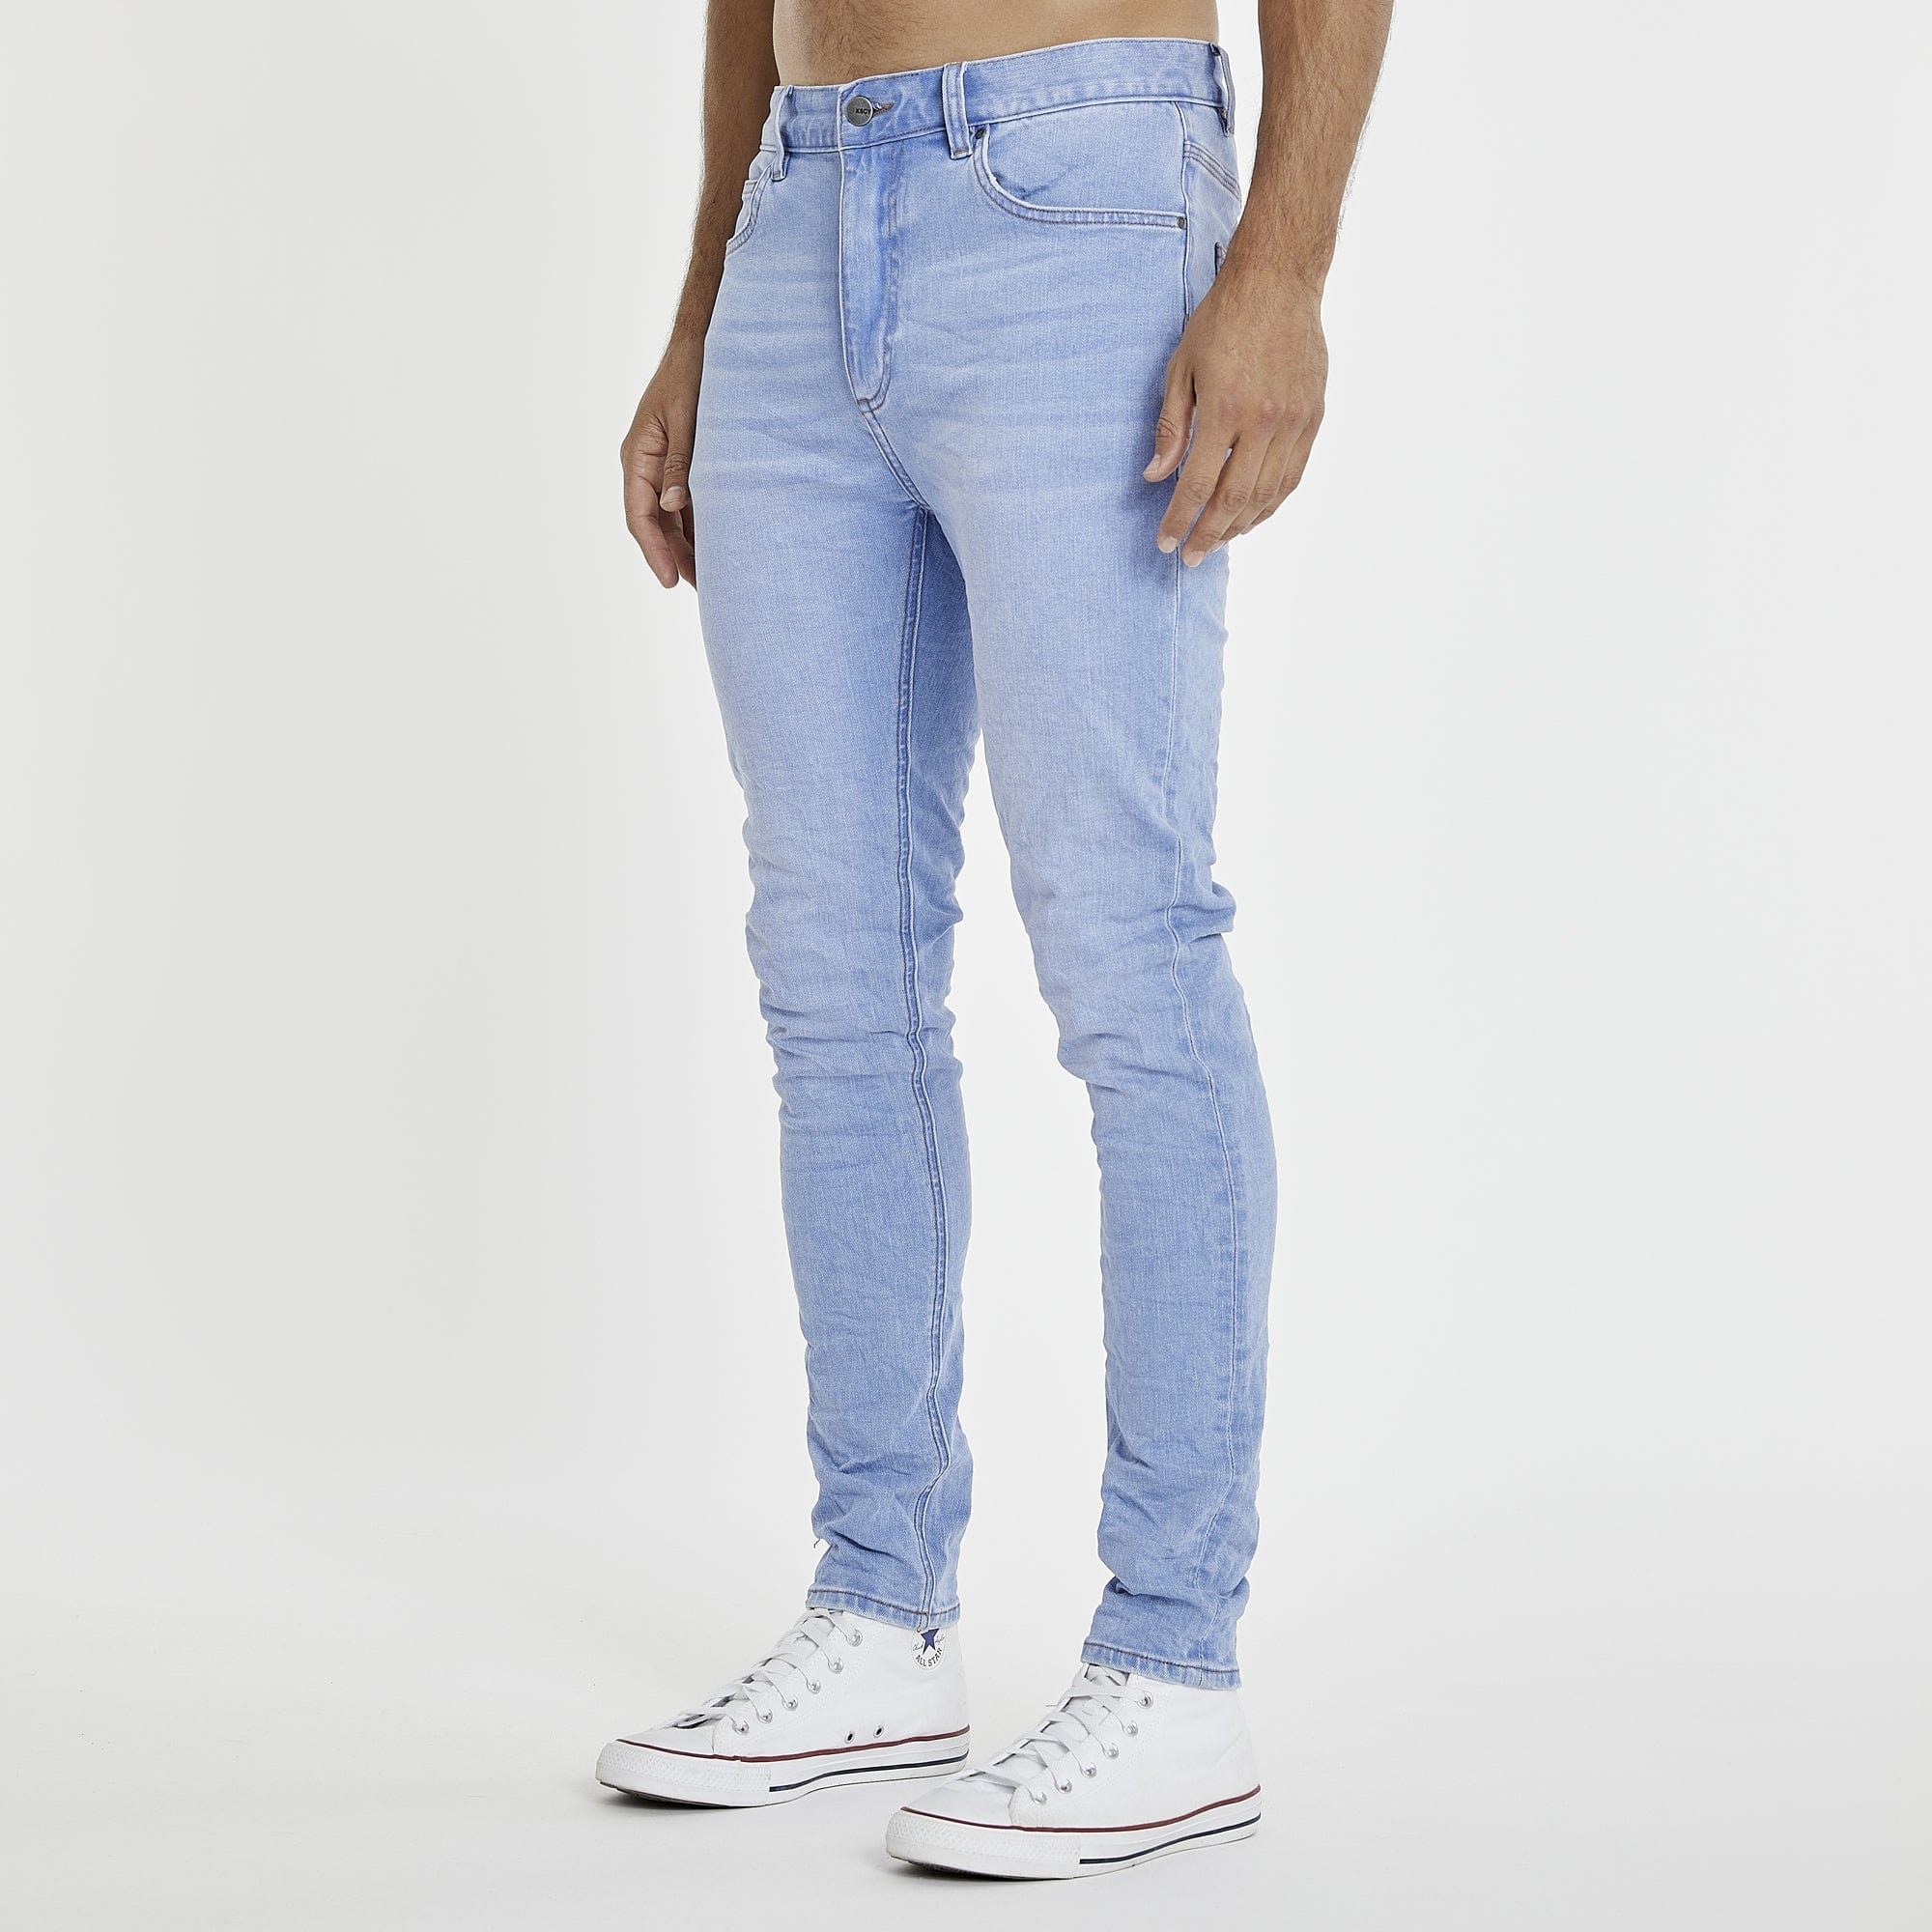 K1 Super Skinny Fit Jeans Ultimate Blue